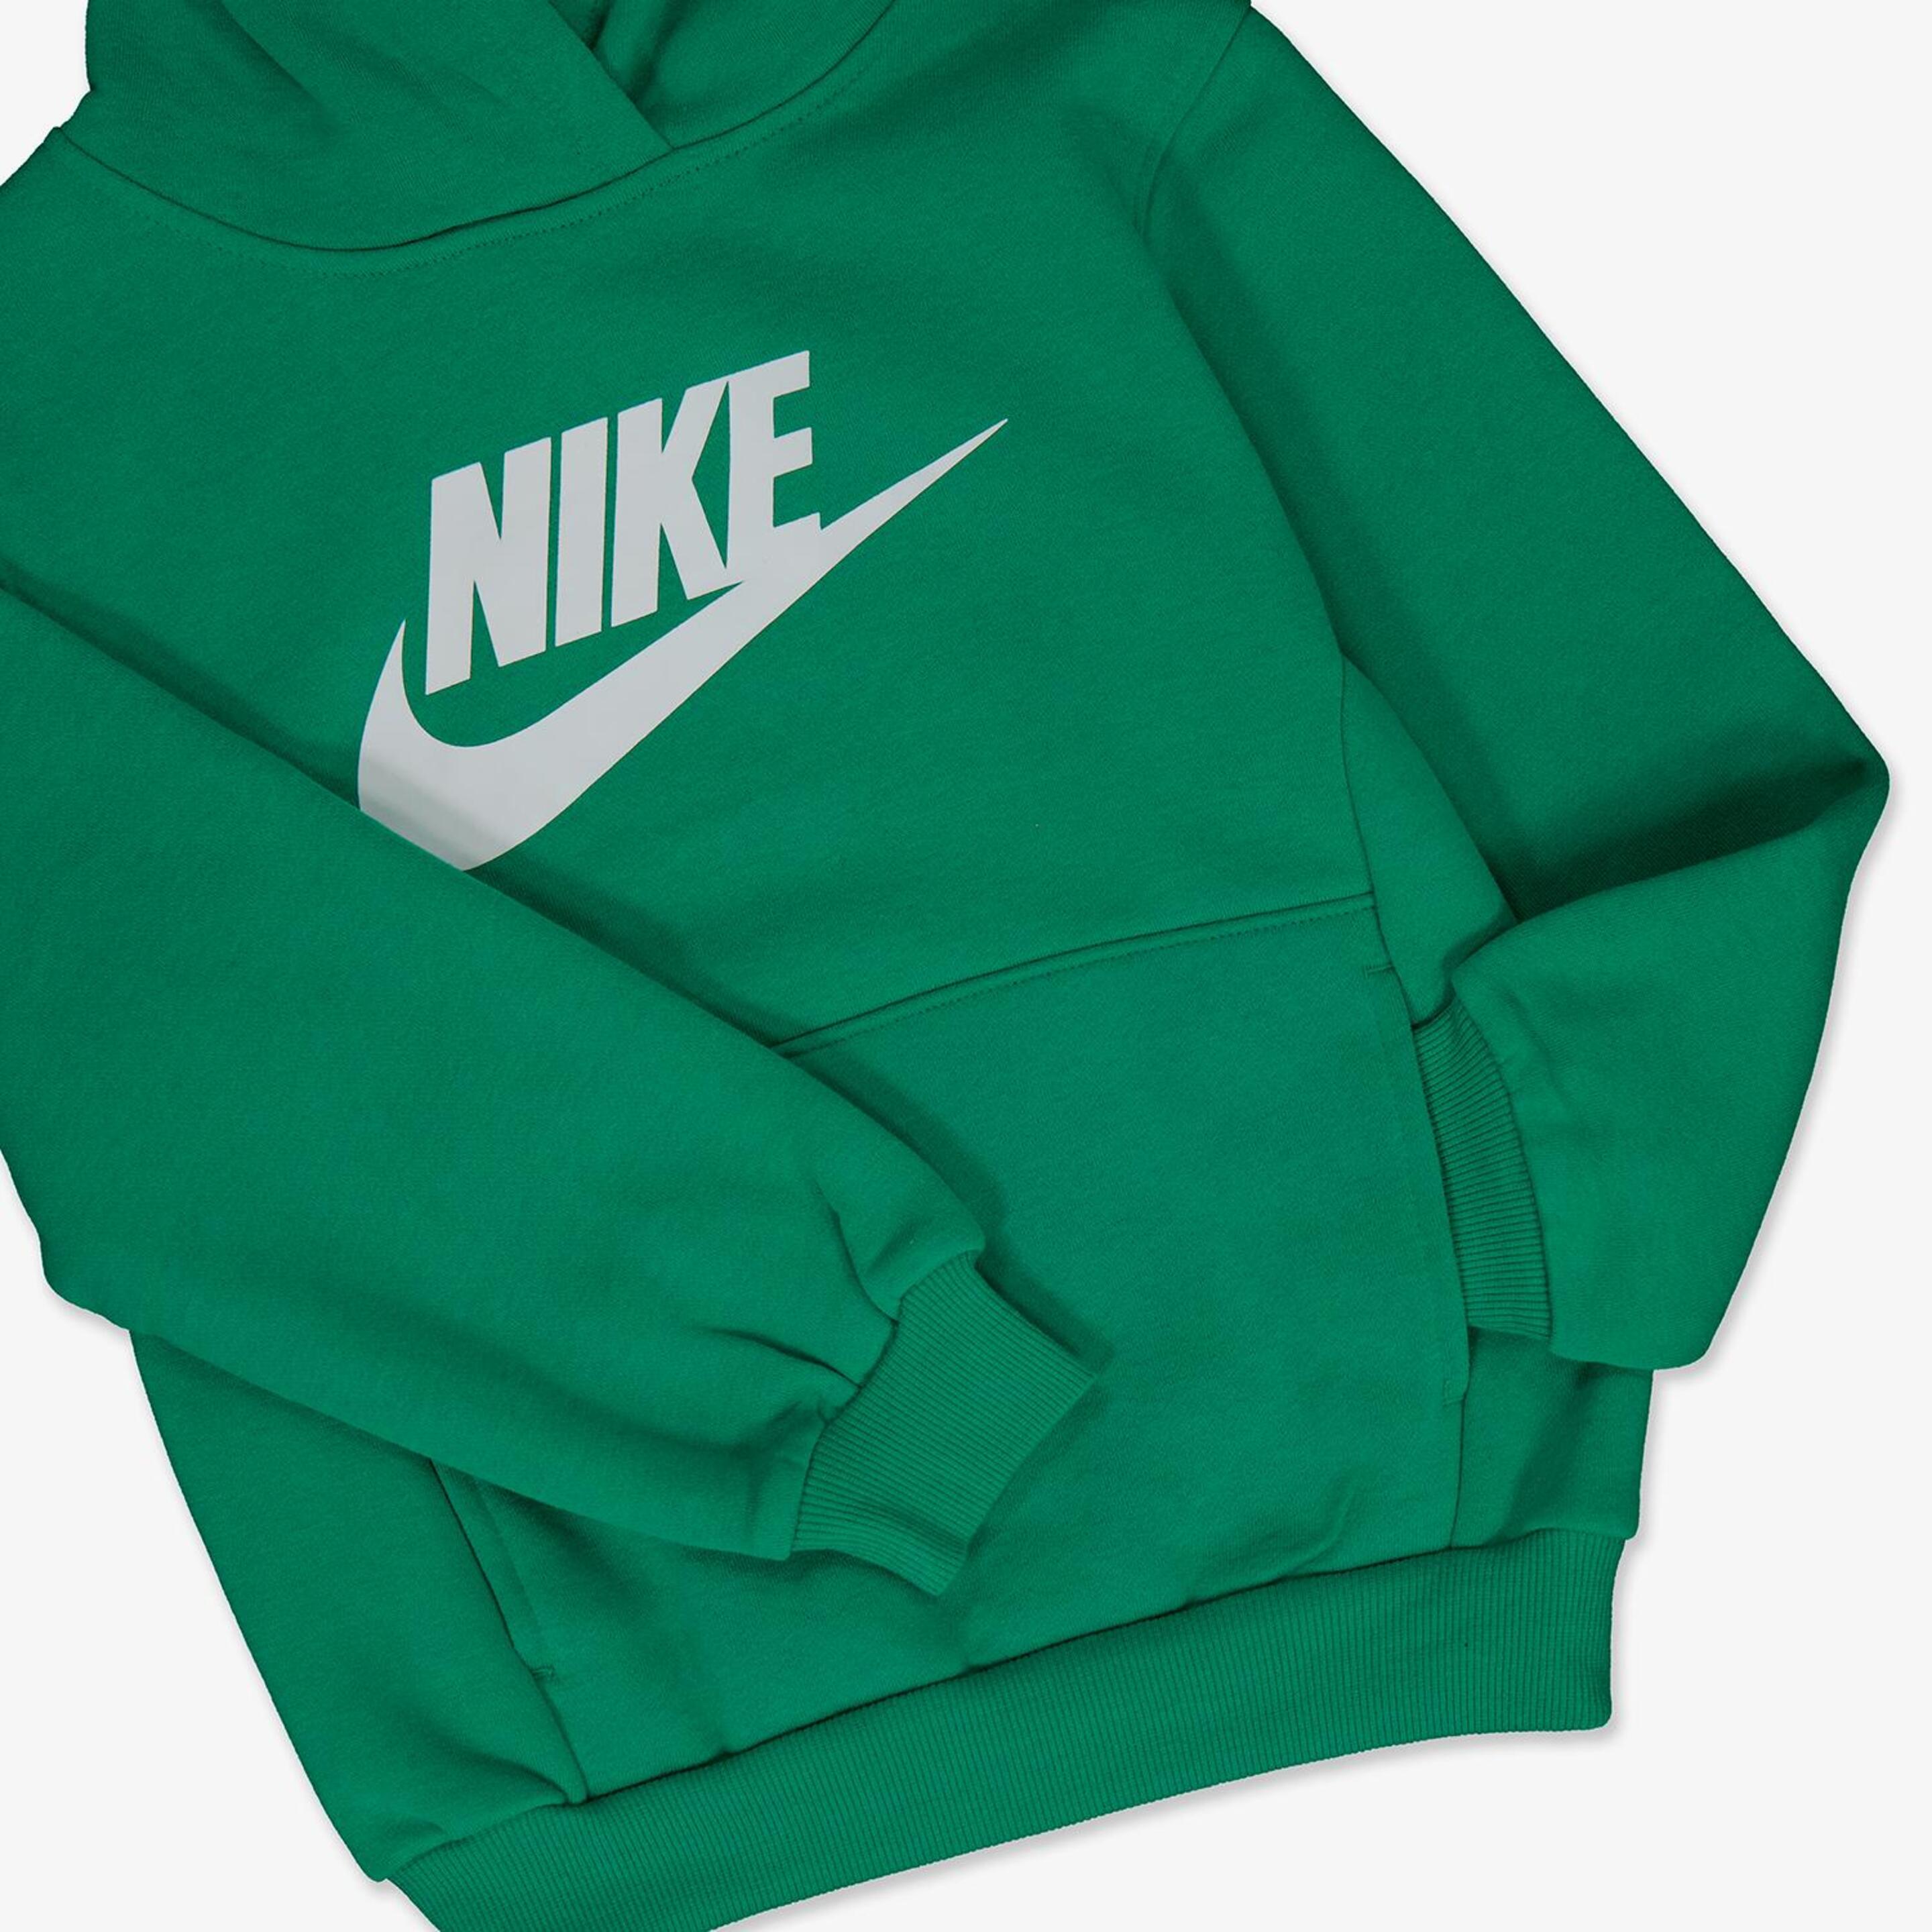 Chándal Nike - Verde - Chándal Niño